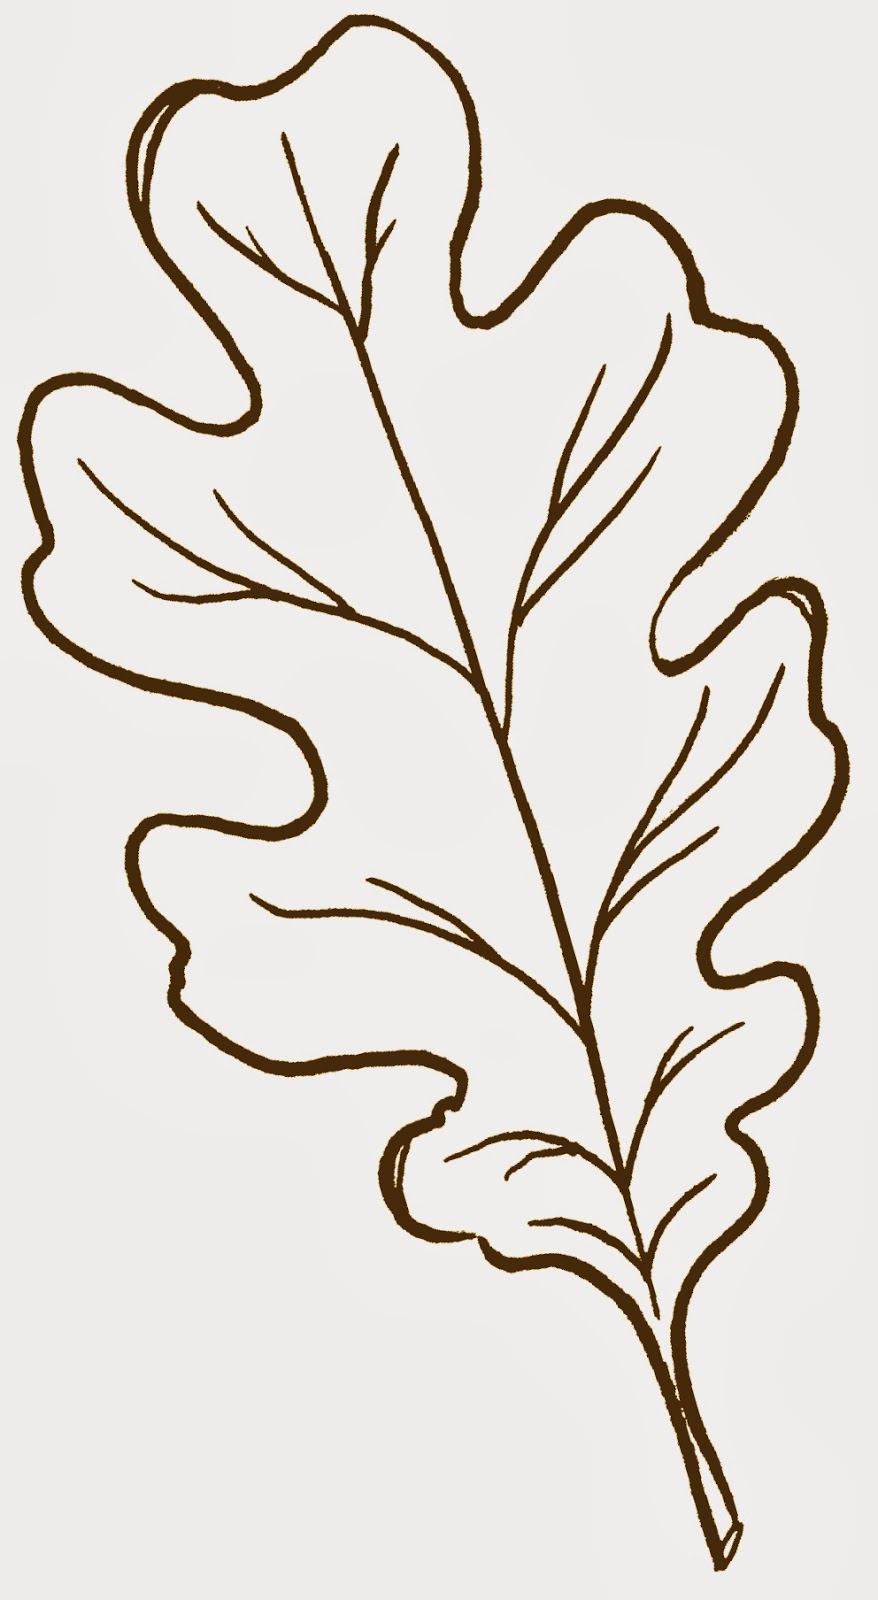 Pix For > Fall Oak Leaf Clip Art